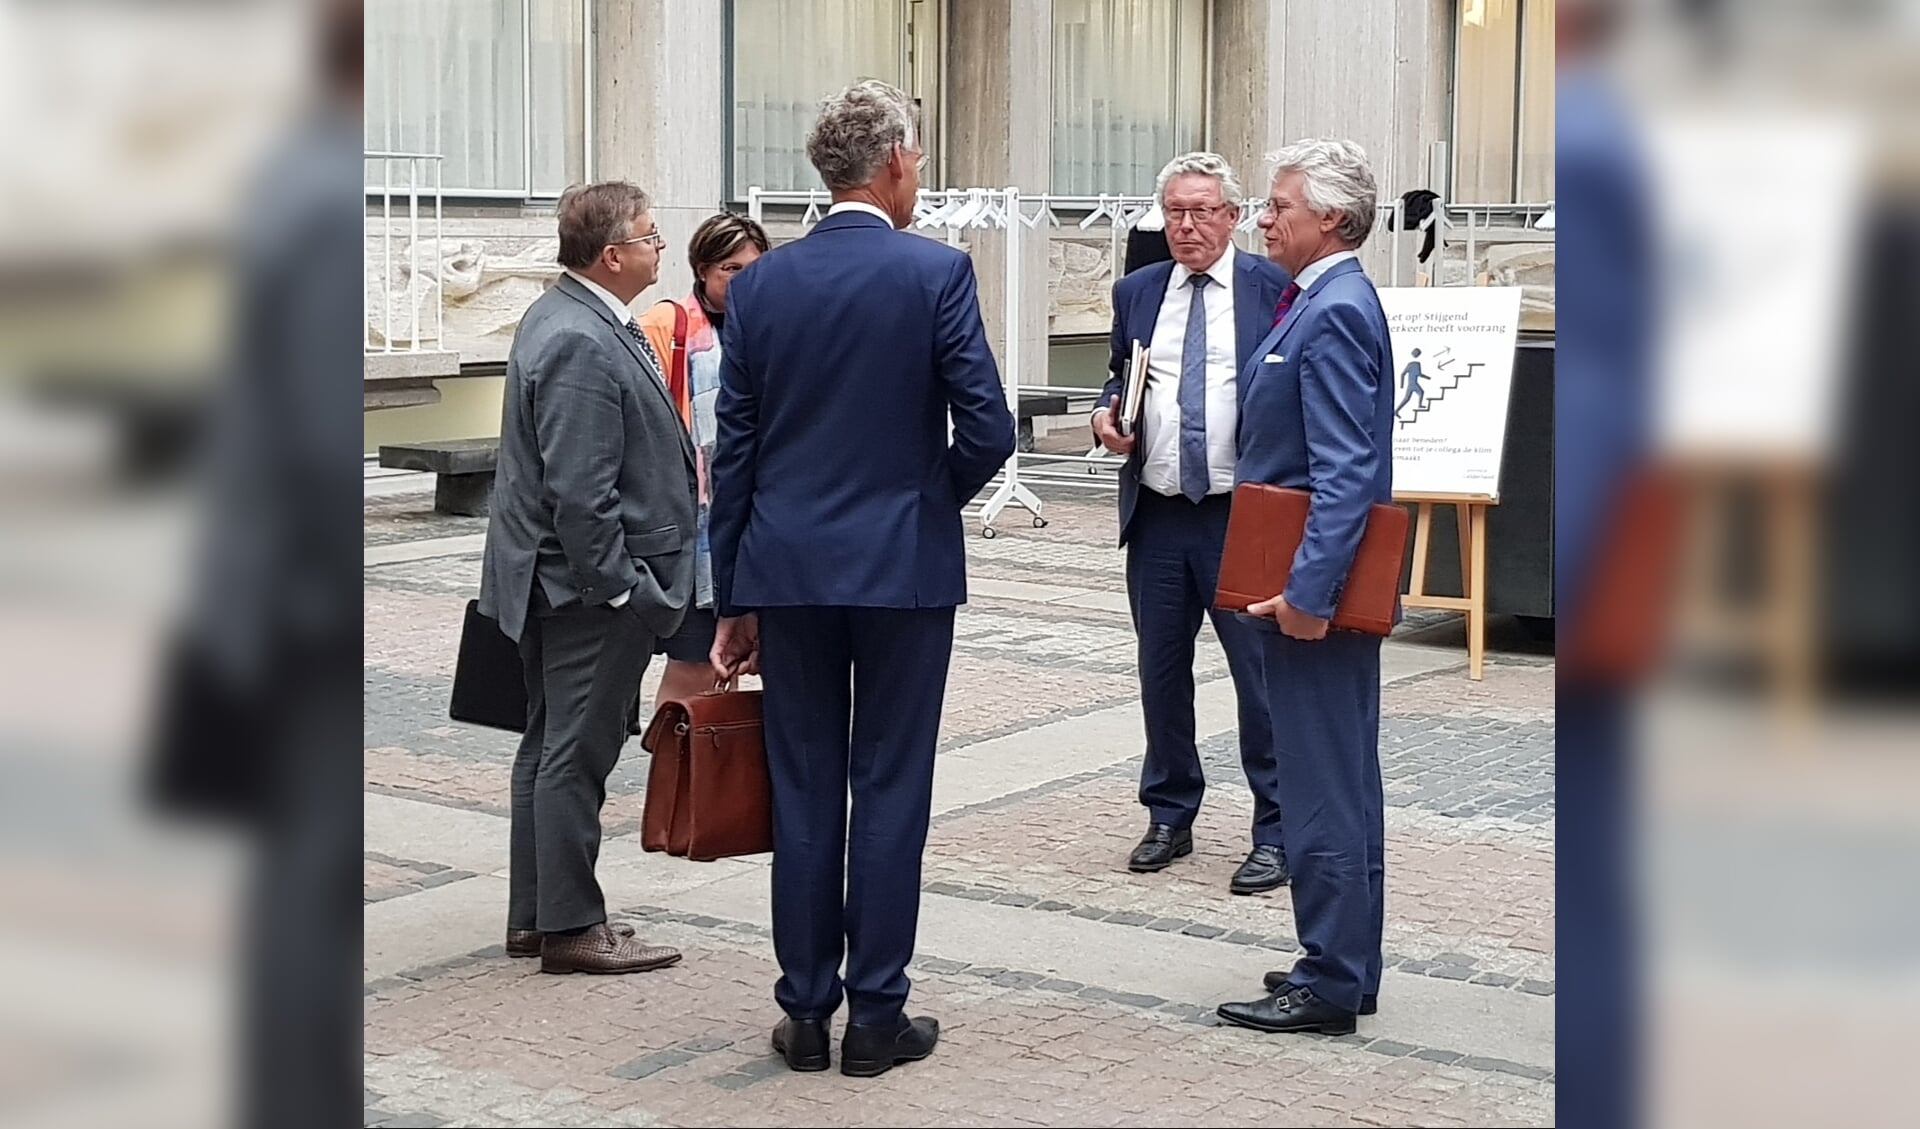 CvK John Berends en gedeputeerde Markink in gesprek met het bezoek uit Scherpenzeel